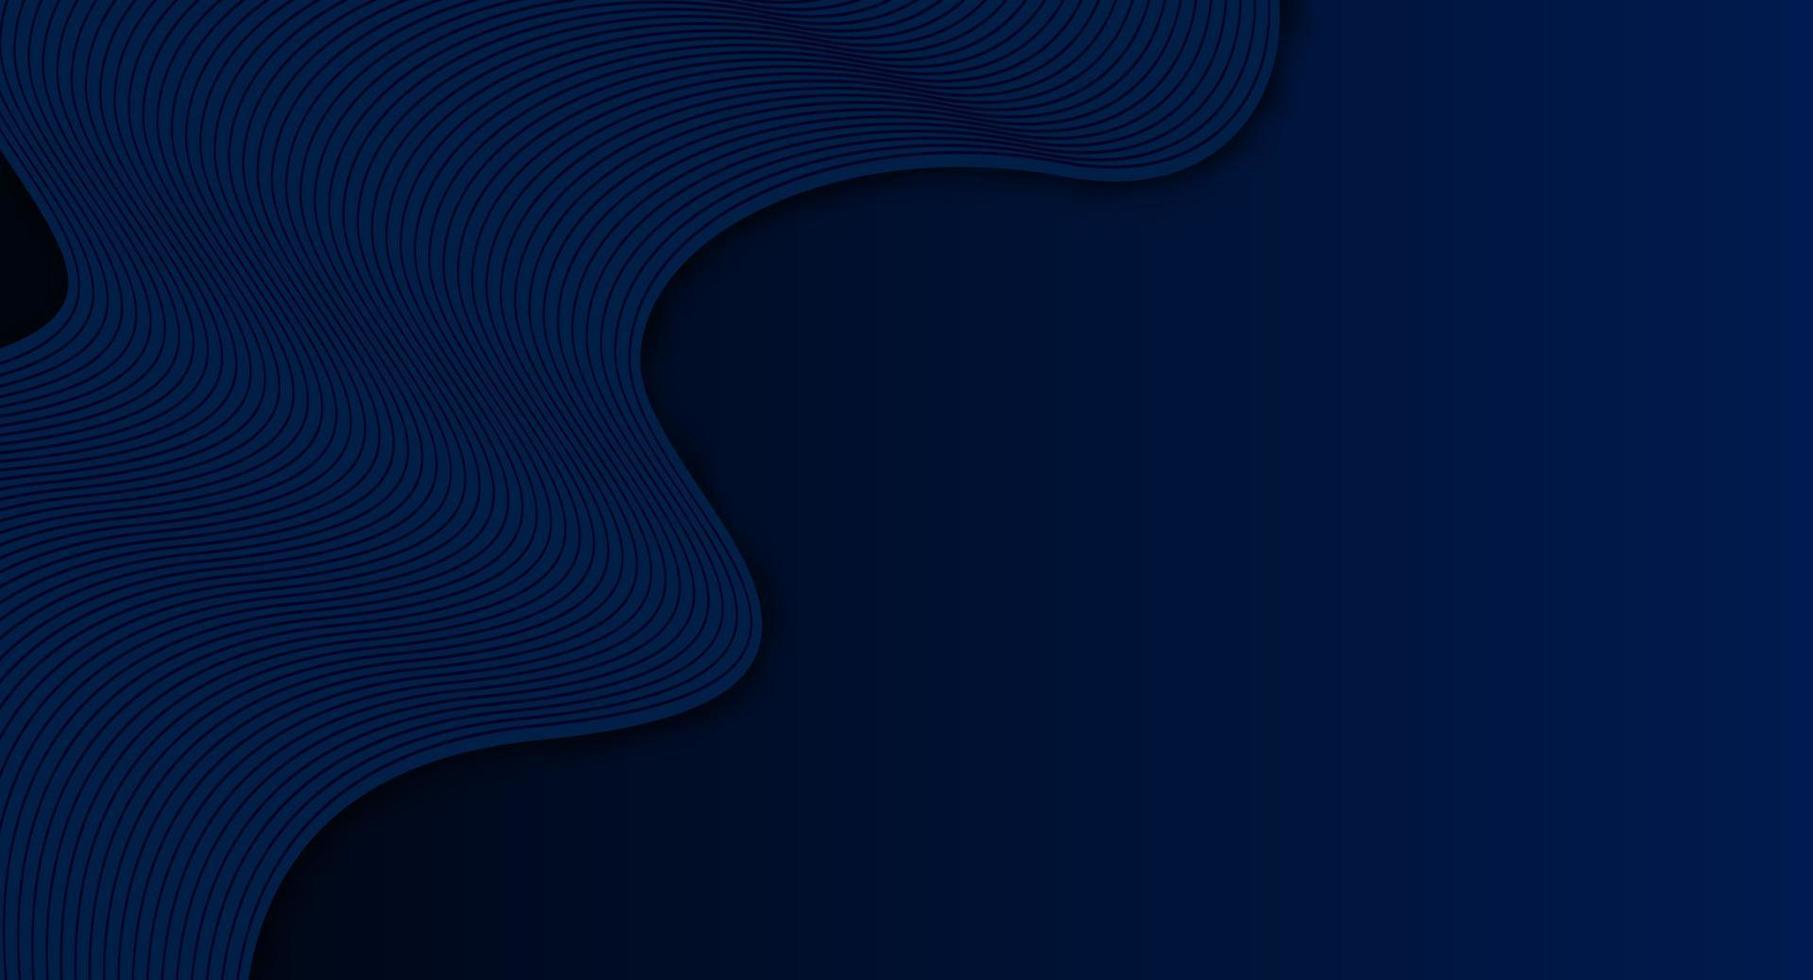 modern Vinka kurva abstrakt mörk blå bakgrund, blandning kurva rader Vinka. vektor illustration.